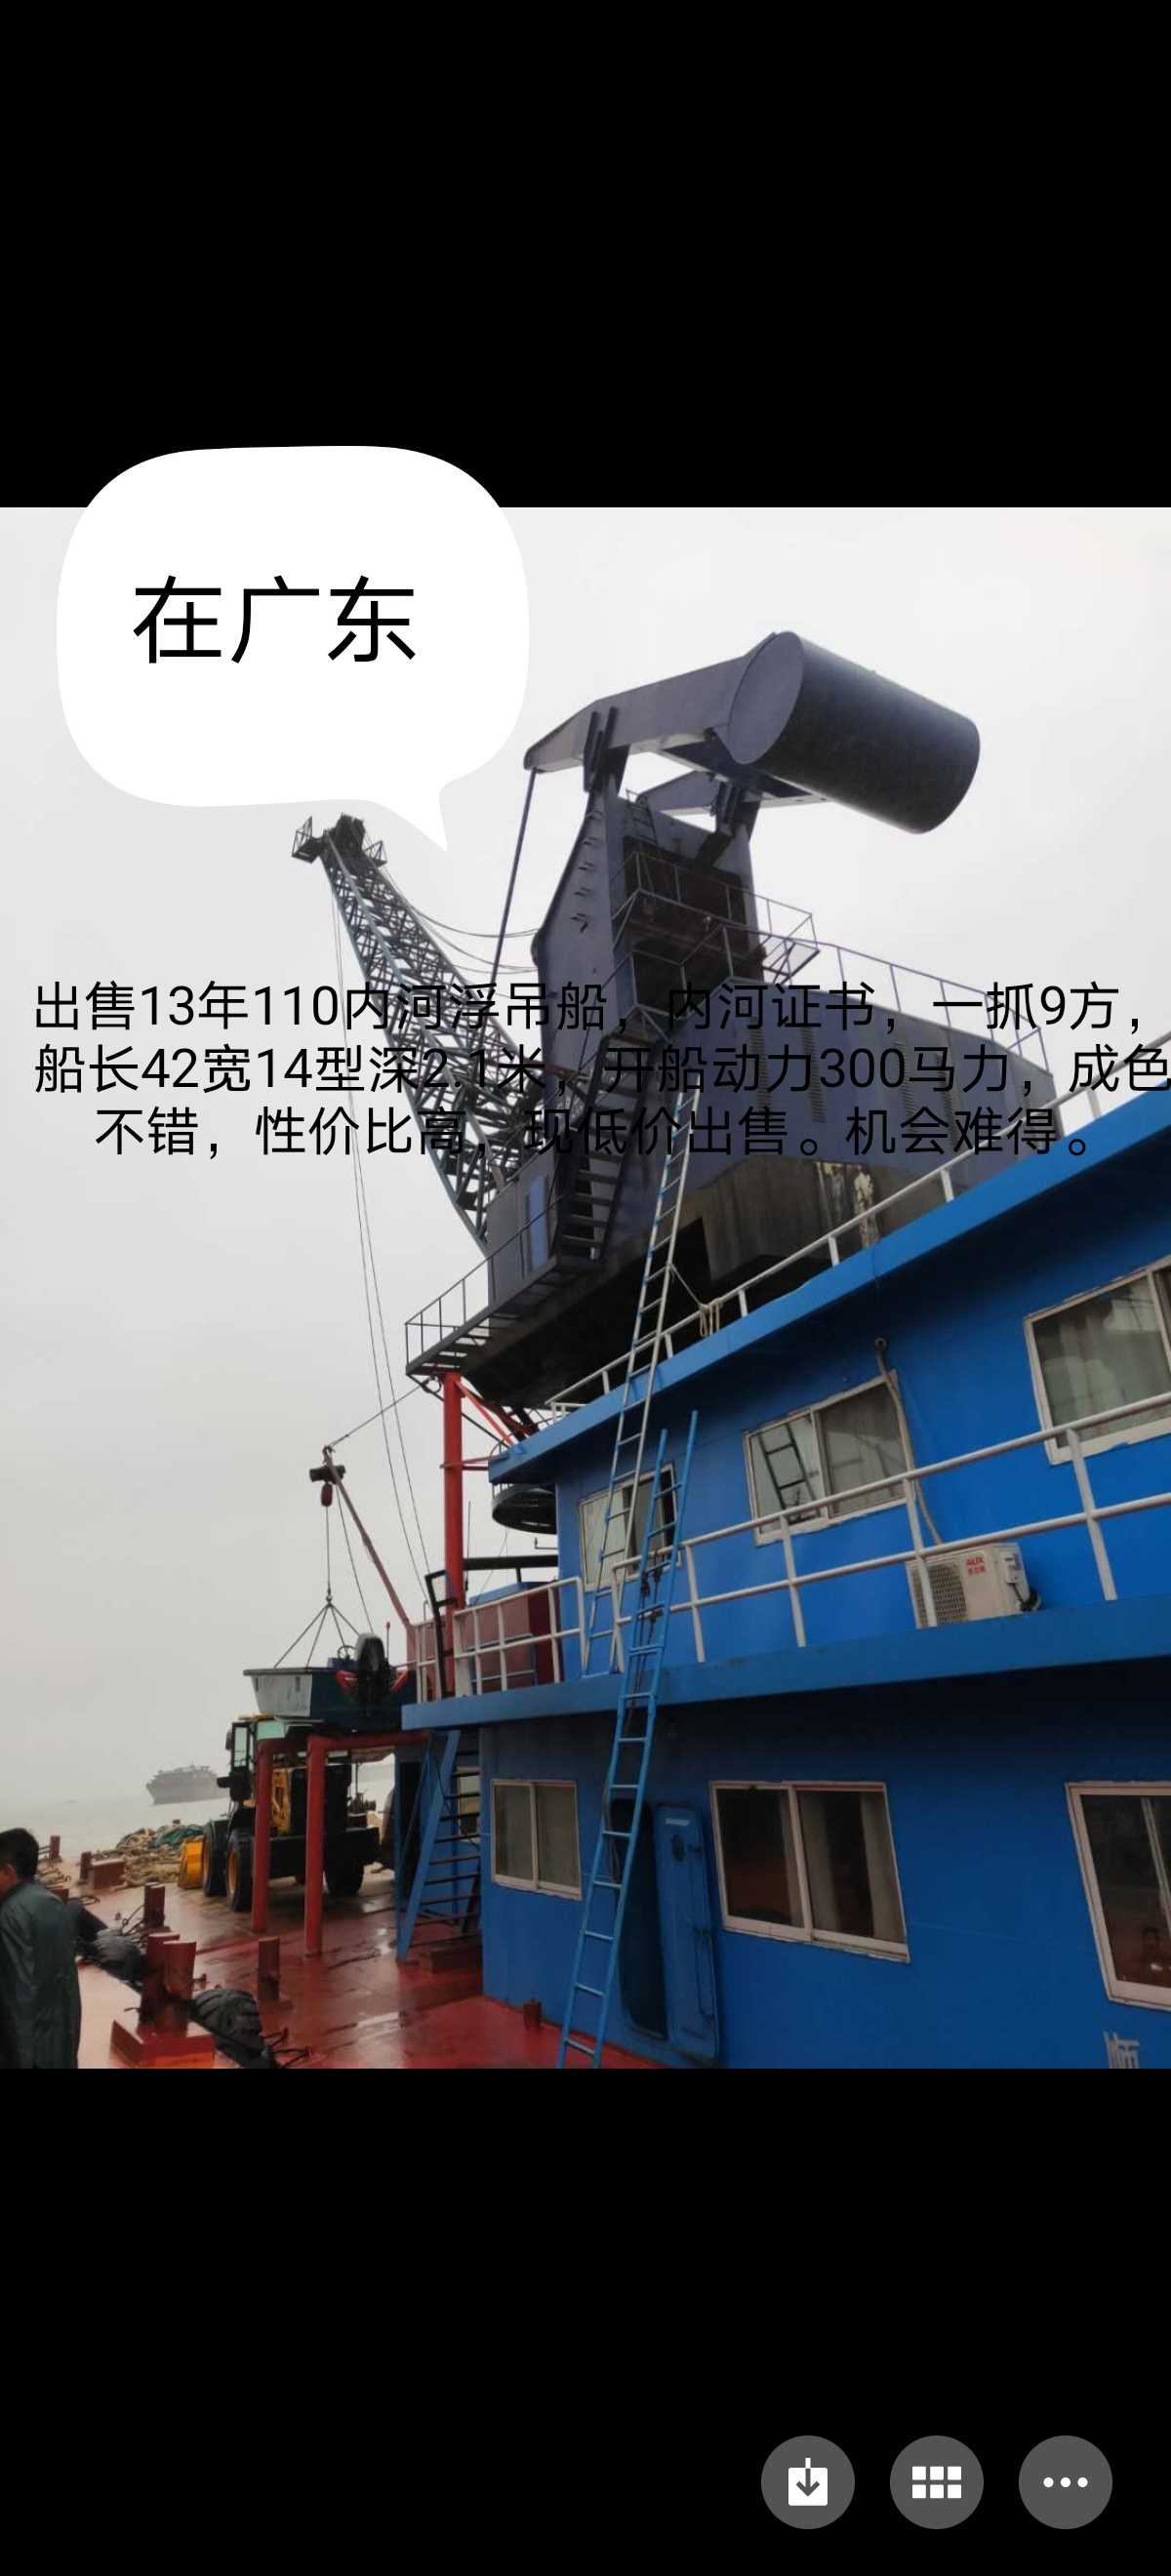 浮吊船 浮吊船交易 浮吊船买卖 二手浮吊船出租出售 上船舶搜船网